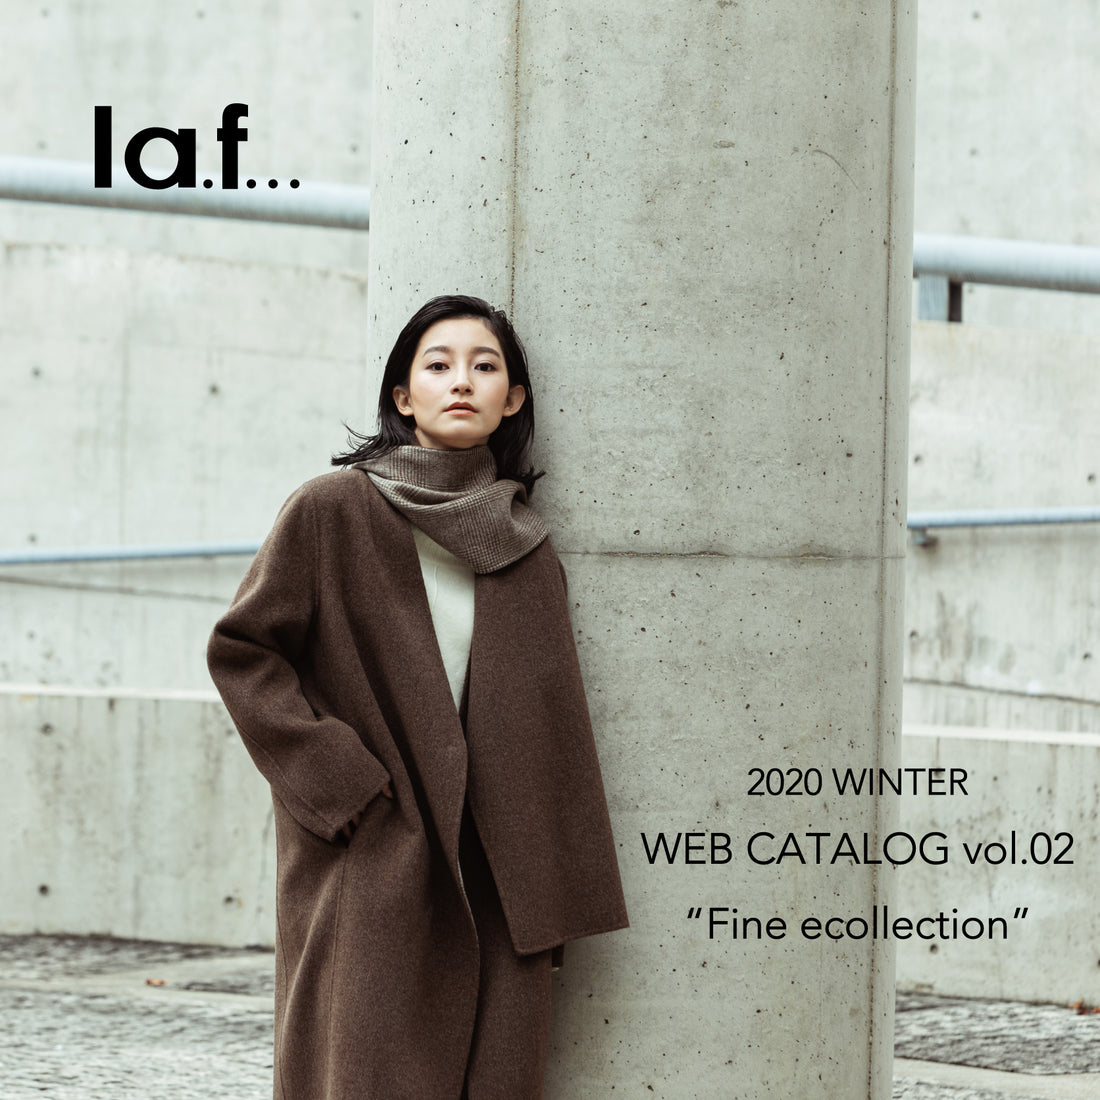 la.f... 2020 WINTER WEB CATALOG vol.02